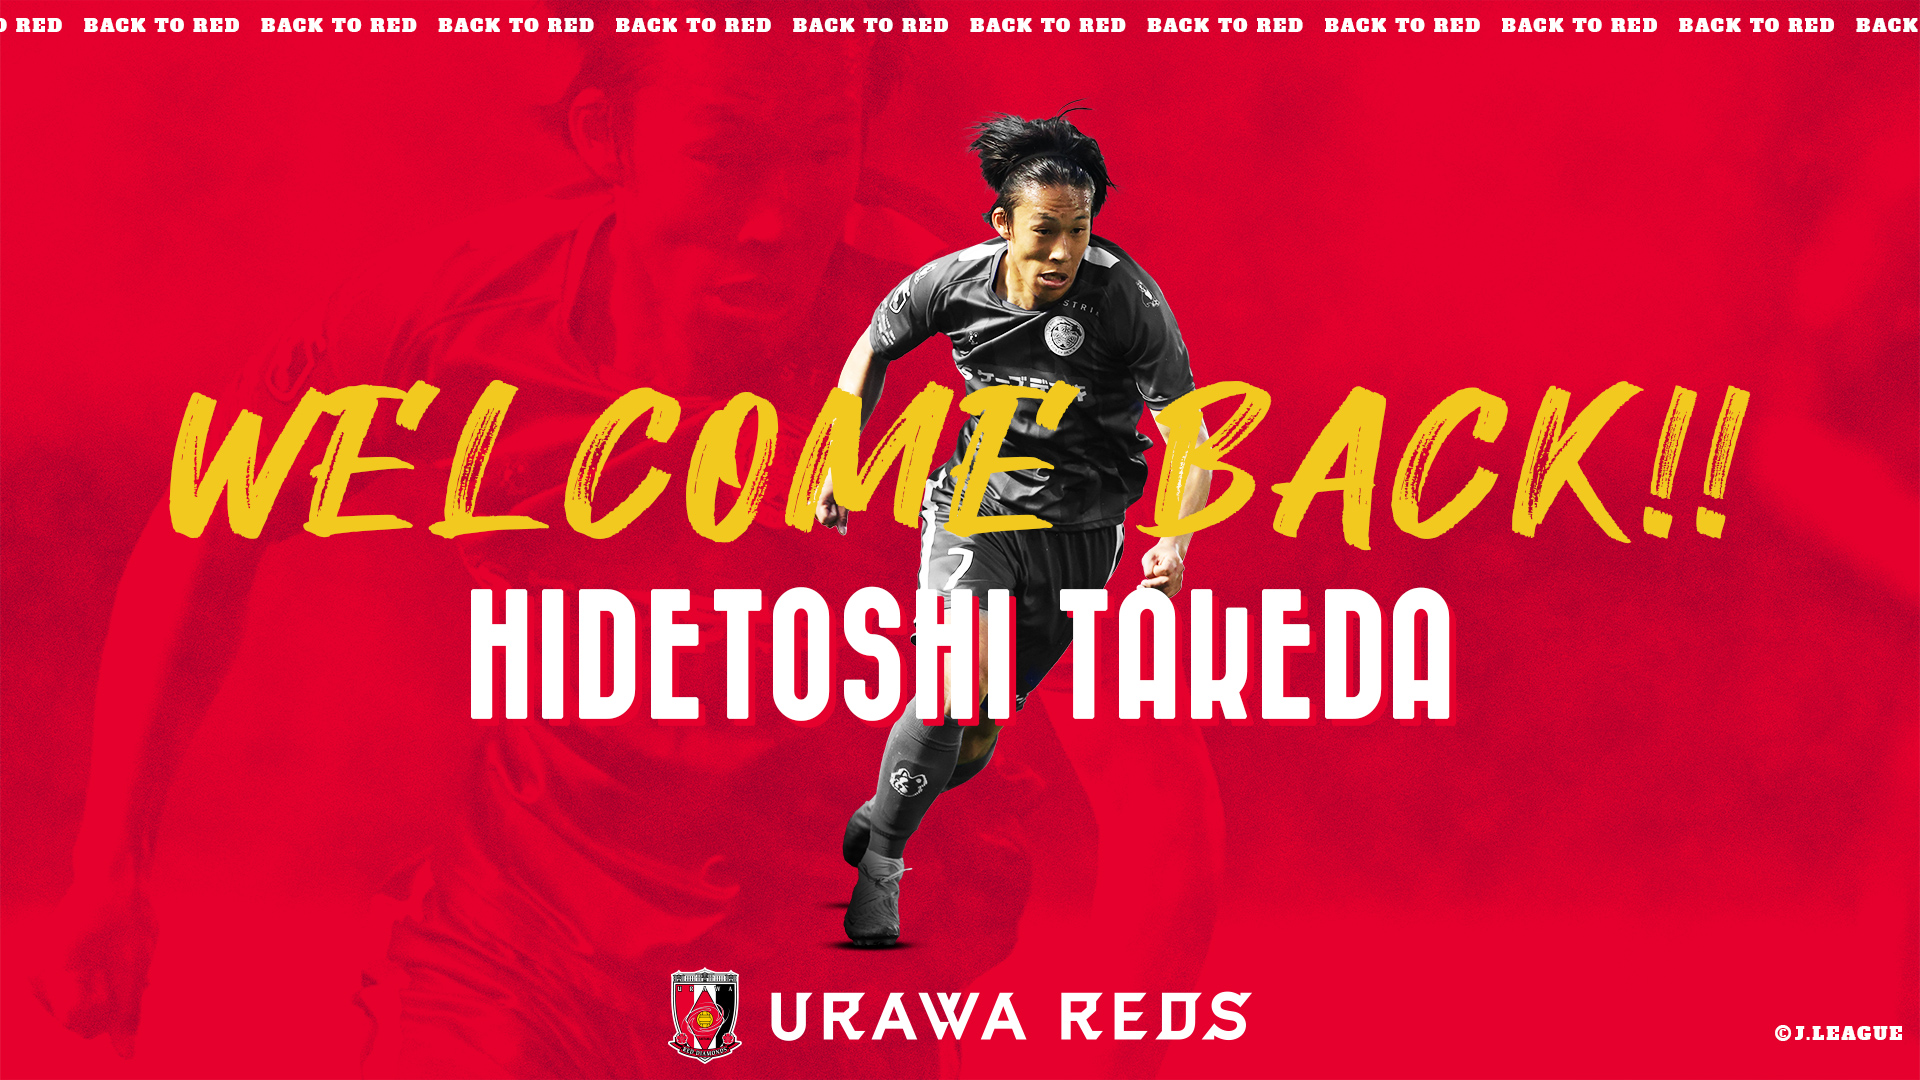 ประกาศการกลับมาของ Hidetoshi Takeda ทาเคดะต่ออูราวะ Urawa Reds